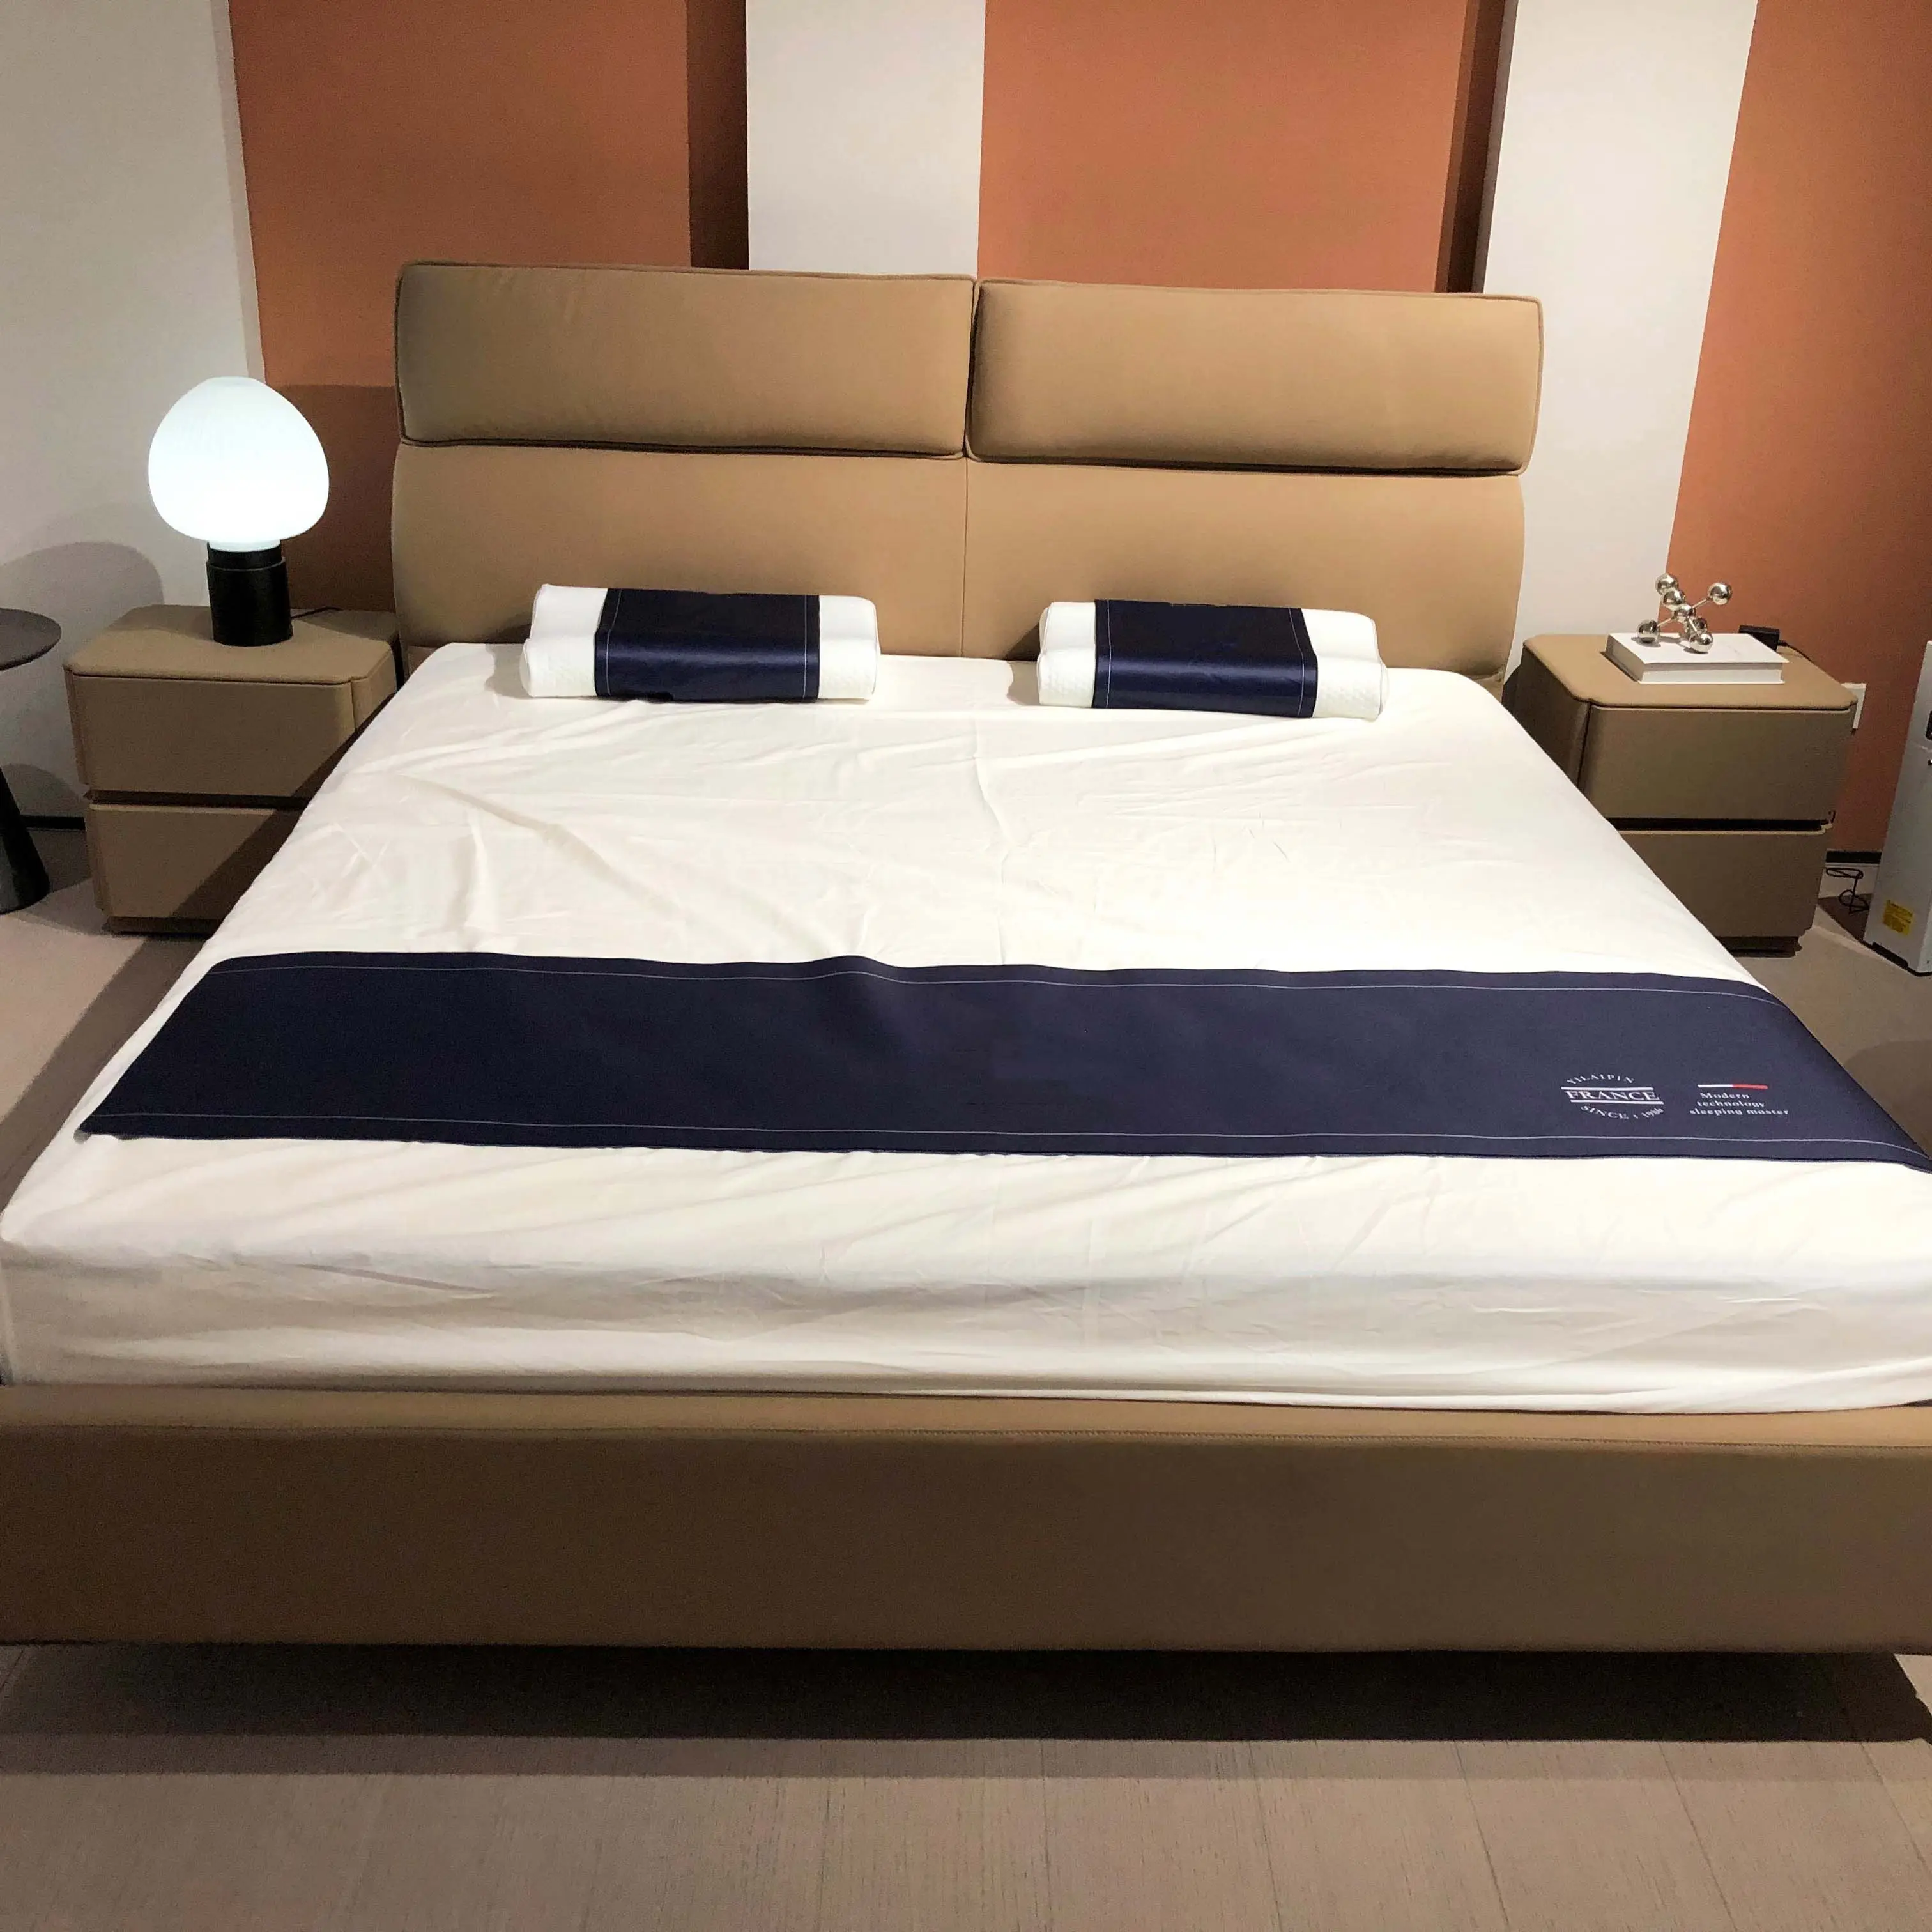 Современный дизайн мягкая кожаная кровать на платформе с мягким комфортным изголовьем кровать размера «king-size» для спальни